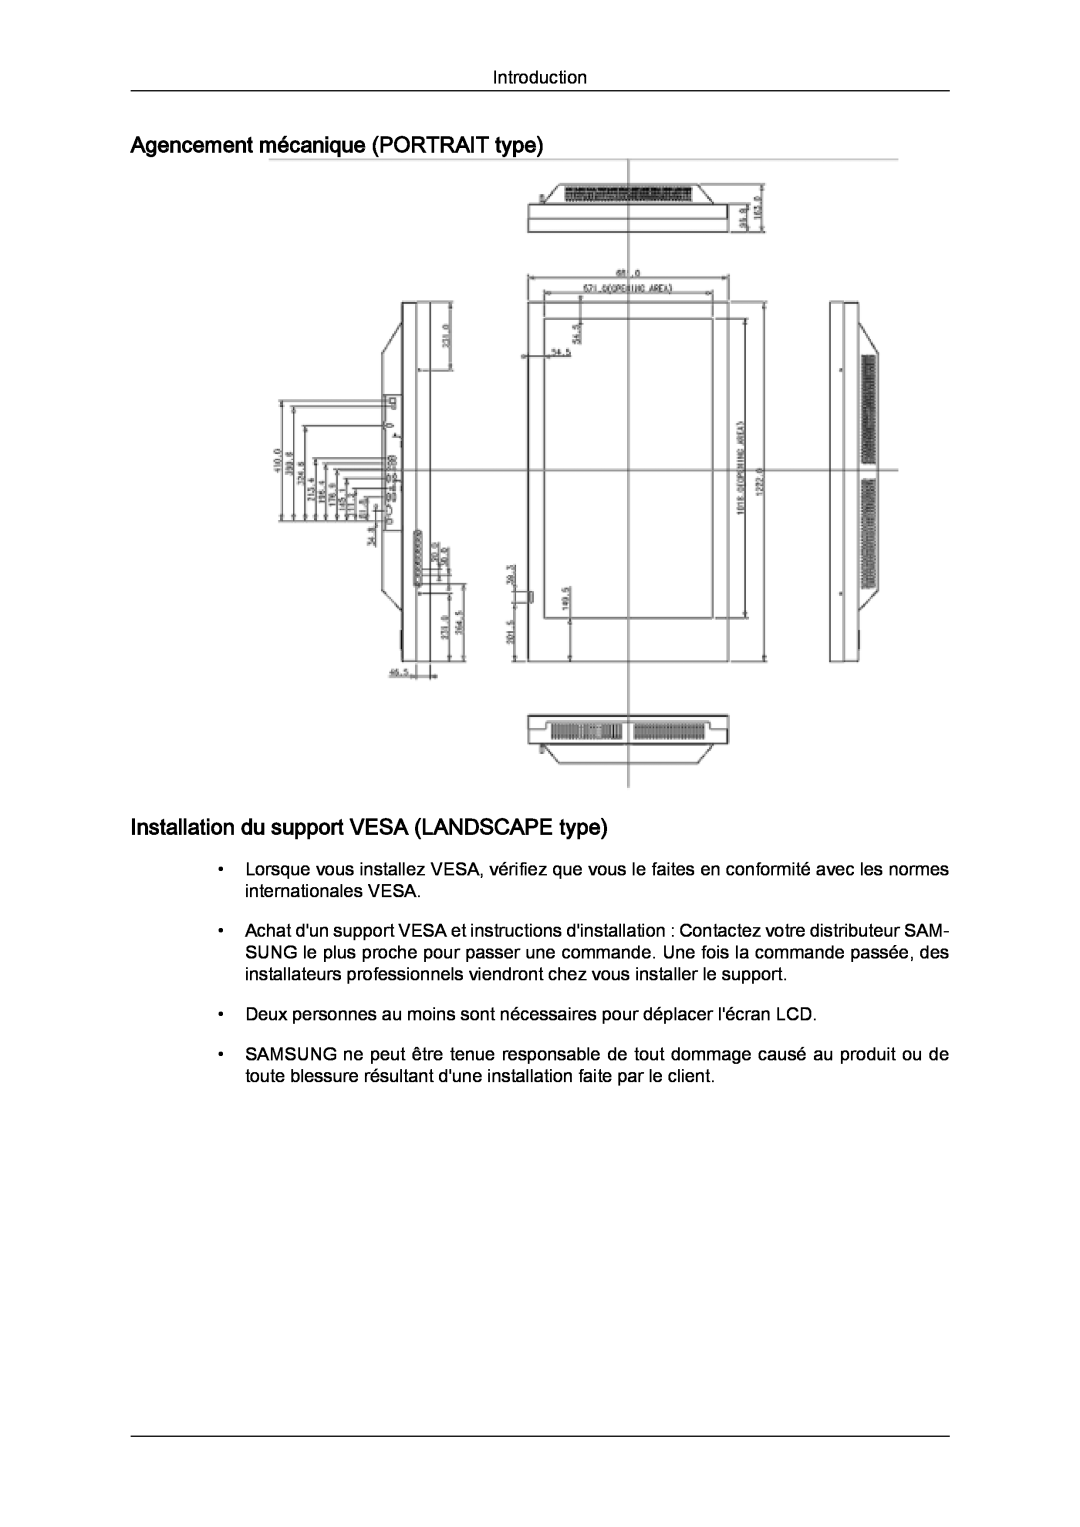 Samsung LH46SOTQBC/EN, LH46SOUQSC/EN manual Agencement mécanique PORTRAIT type, Installation du support VESA LANDSCAPE type 